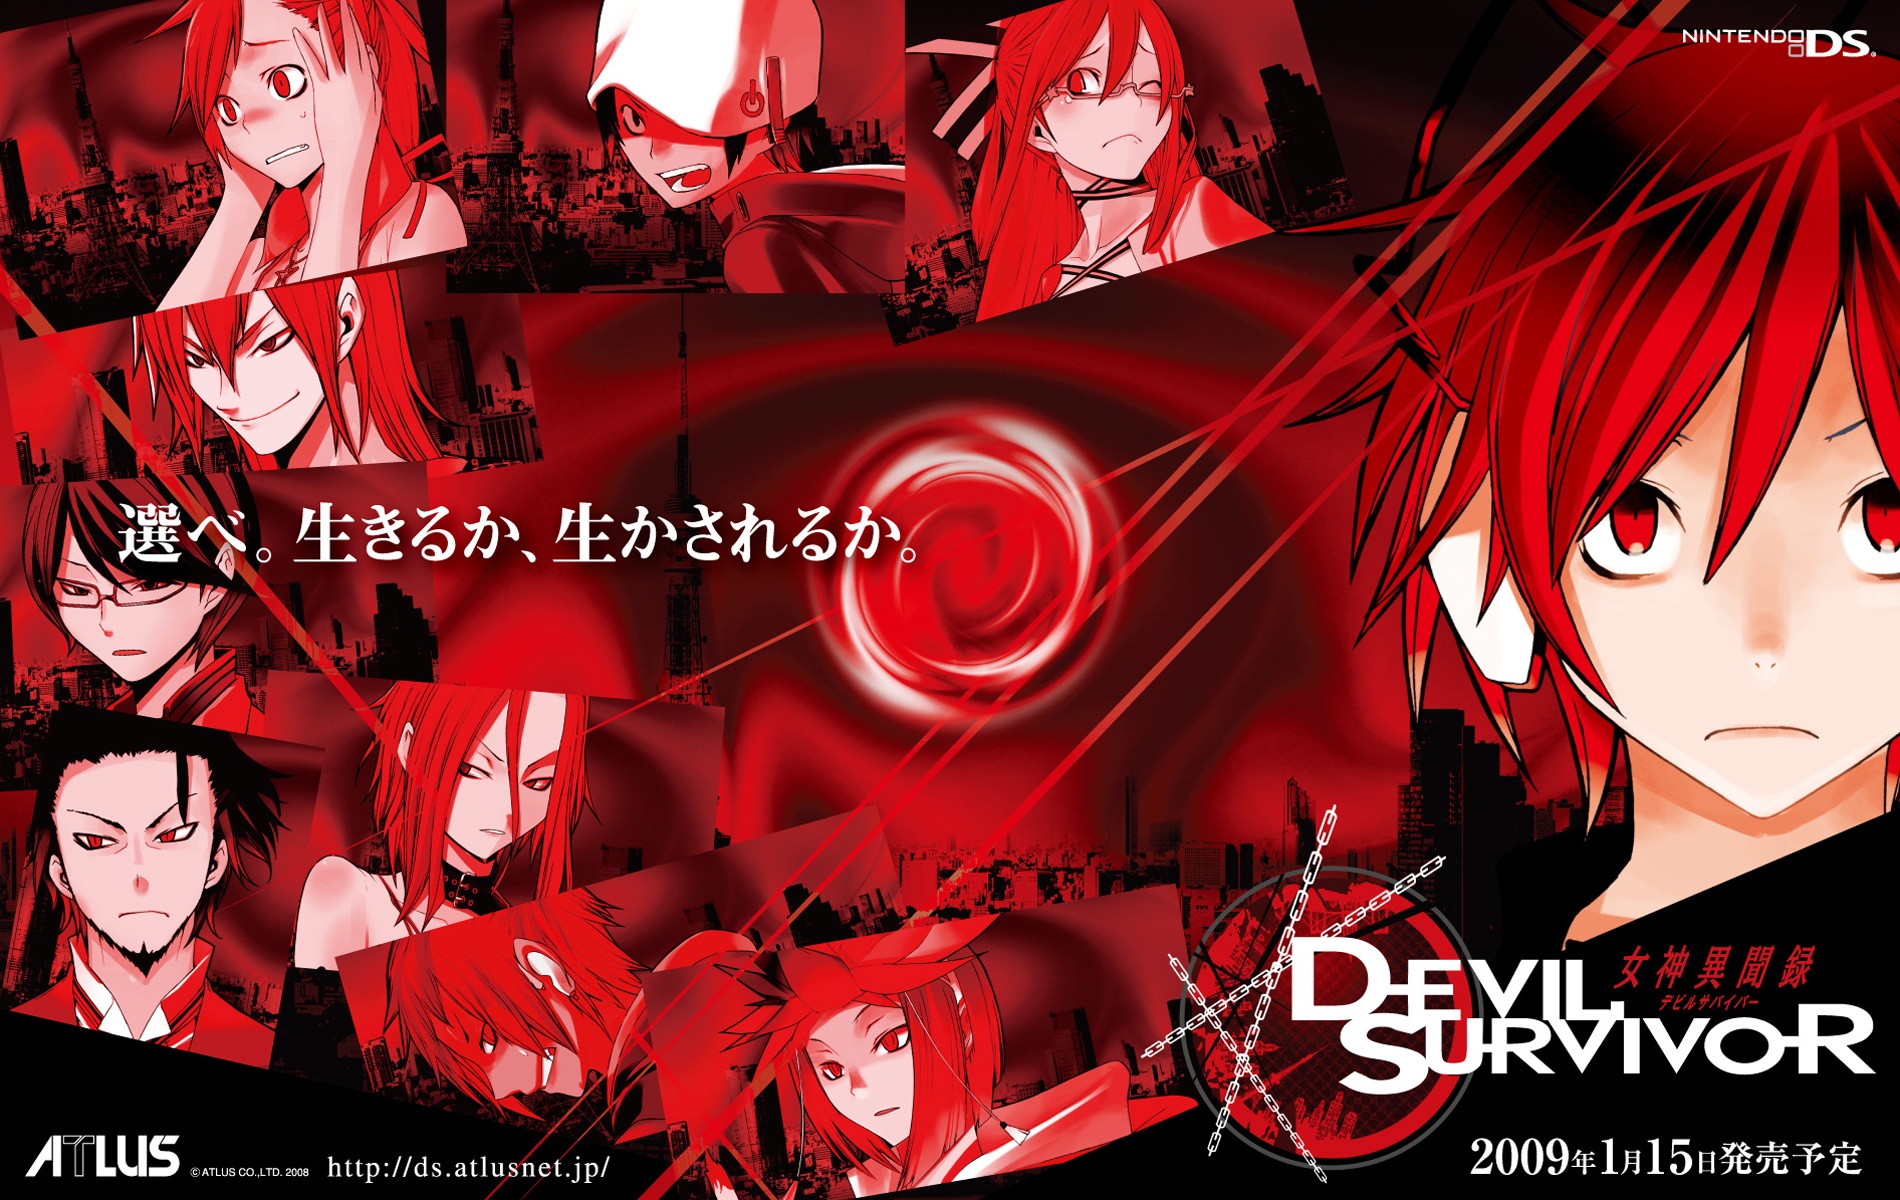 Shin Megami Tensei: Devil Survivor Backgrounds, Compatible - PC, Mobile, Gadgets| 1900x1200 px